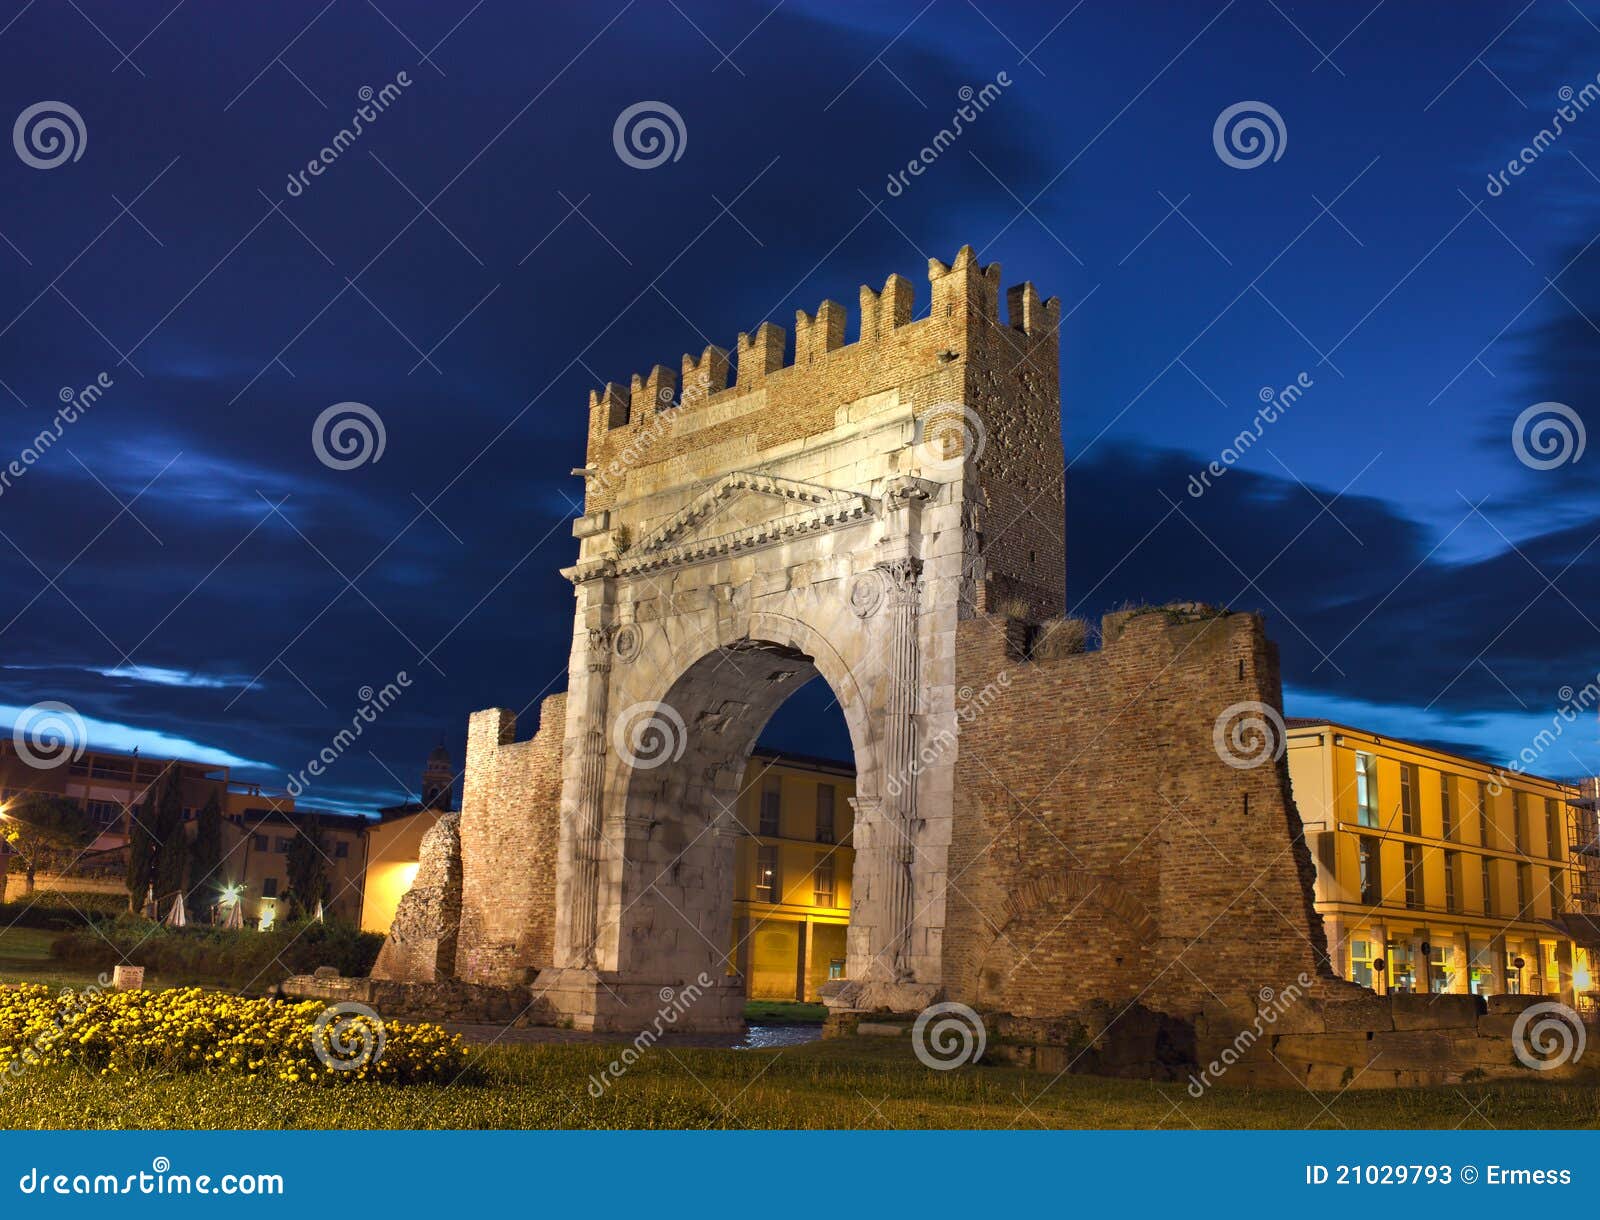 rimini, the arch of augustus